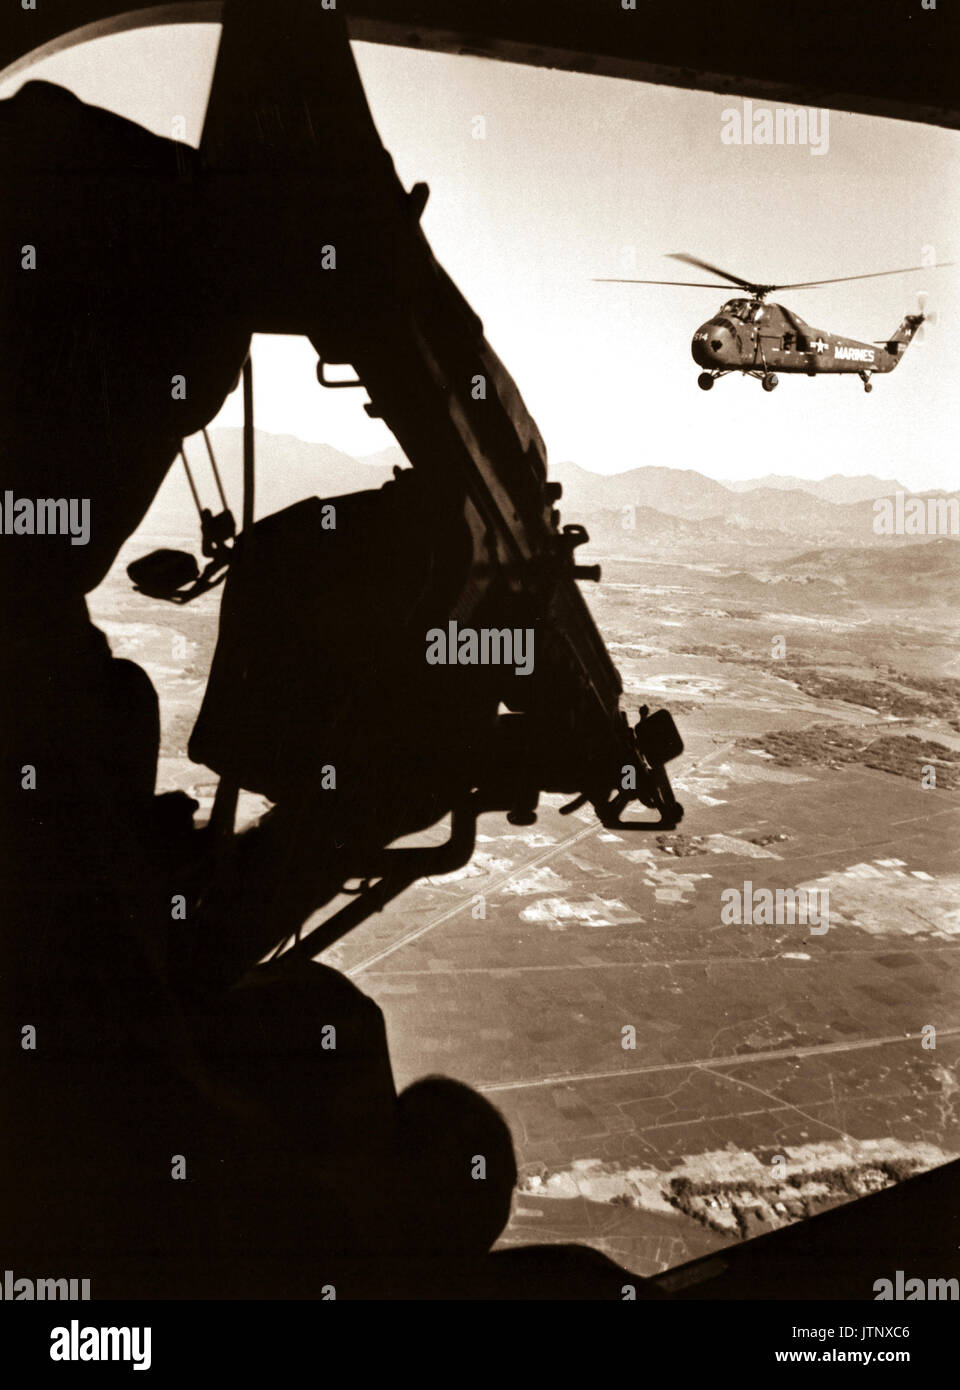 Vietnam: Hubschrauber und Soldat nähert. Ca. 1965. Genaue Datum schossen Unbekannte NARA DATEI #: 306-PSC -65-4106 Krieg & Konflikt Buch Nr.: 402 Stockfoto